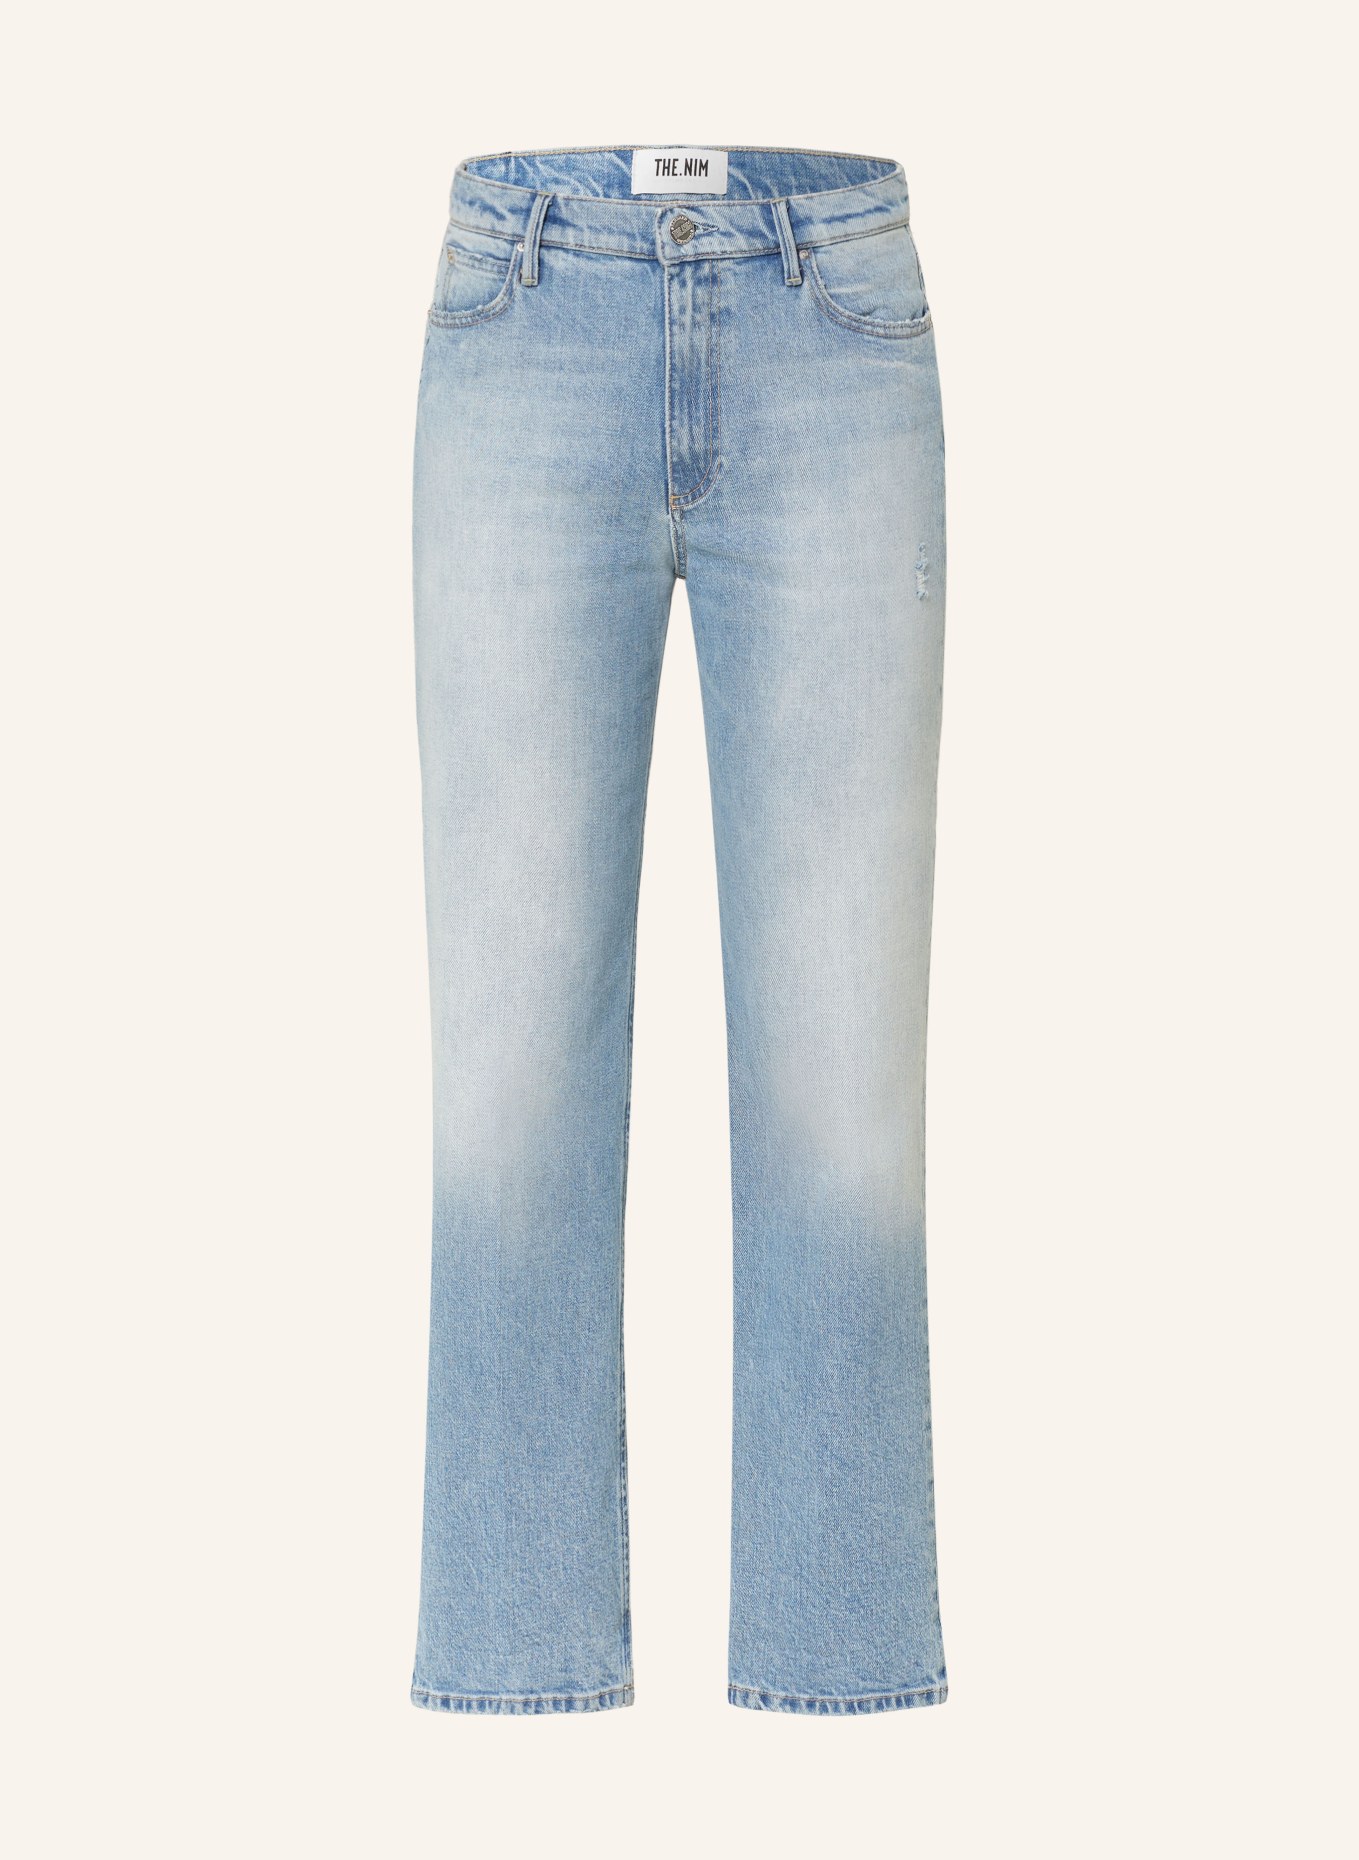 THE.NIM STANDARD Jeans CHERYL, Farbe: W853-LVG LIGHT BLUE (Bild 1)